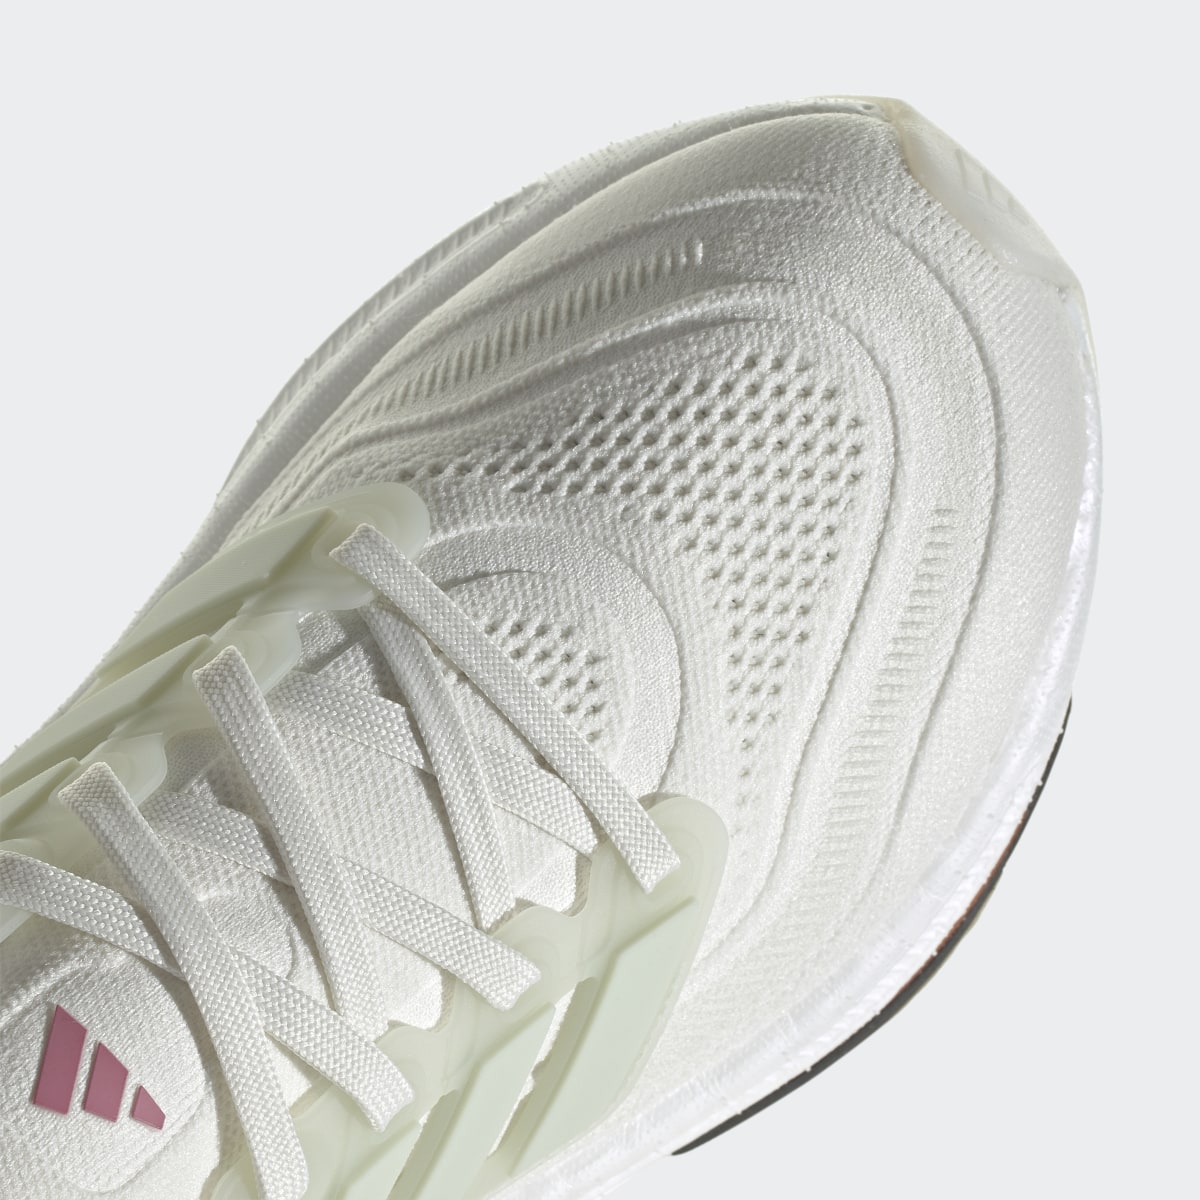 Adidas Ultraboost Light Running Shoes. 10